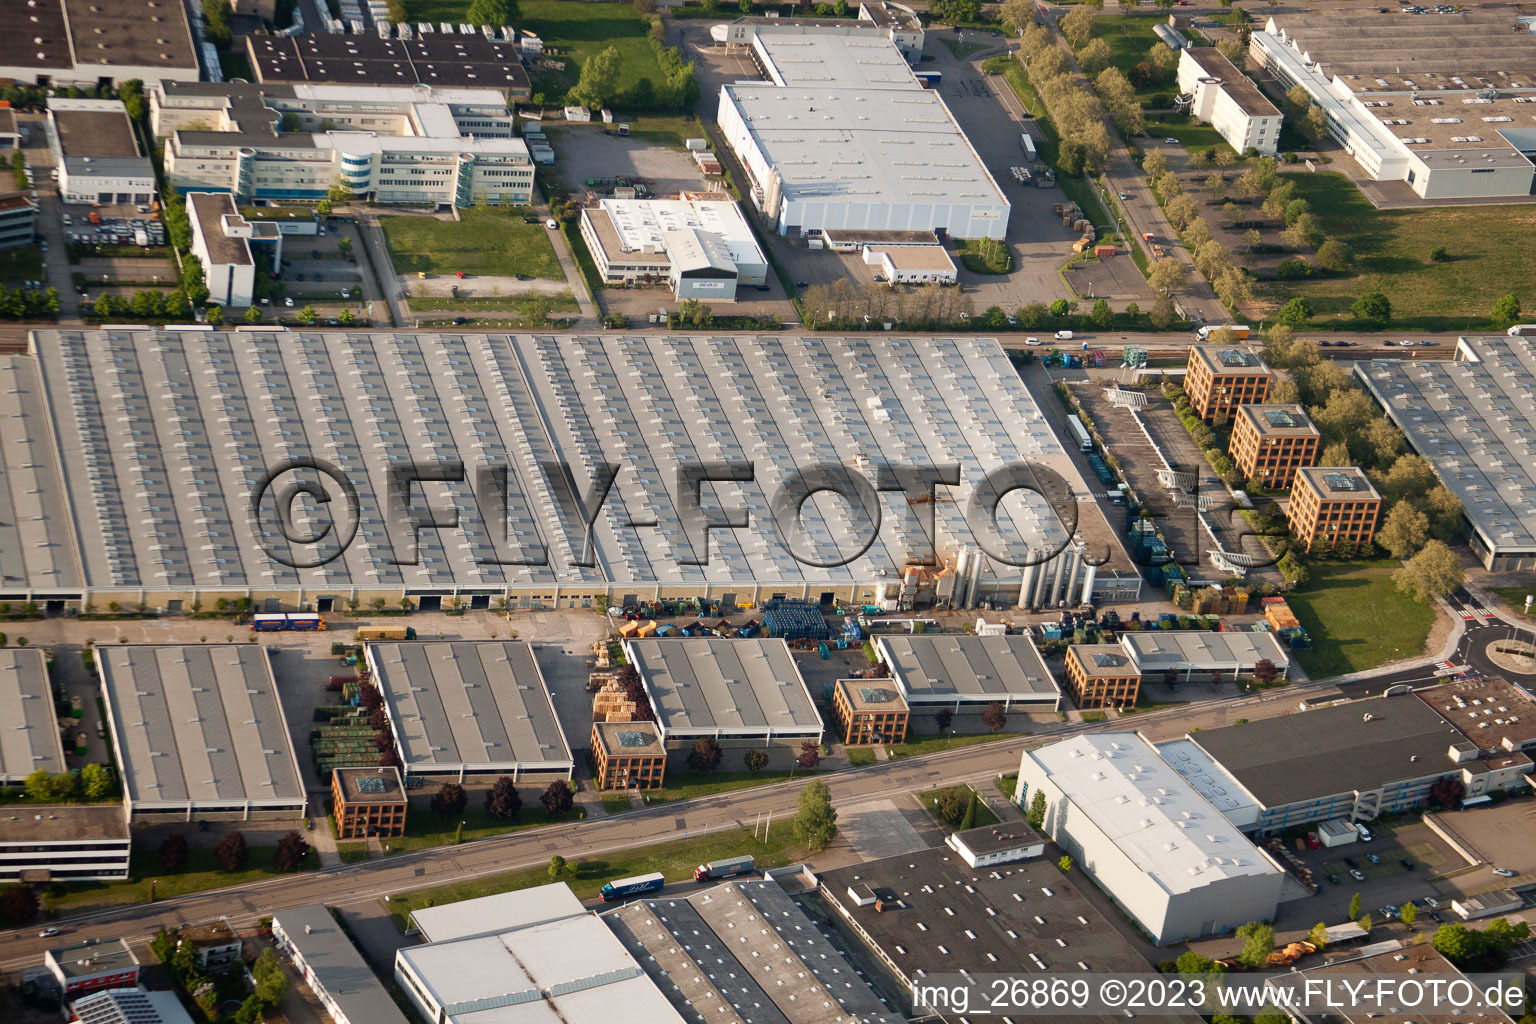 Entrepôt de pièces Daimler, entrepôt de verre Mercedes à Ettlingen dans le département Bade-Wurtemberg, Allemagne vue d'en haut